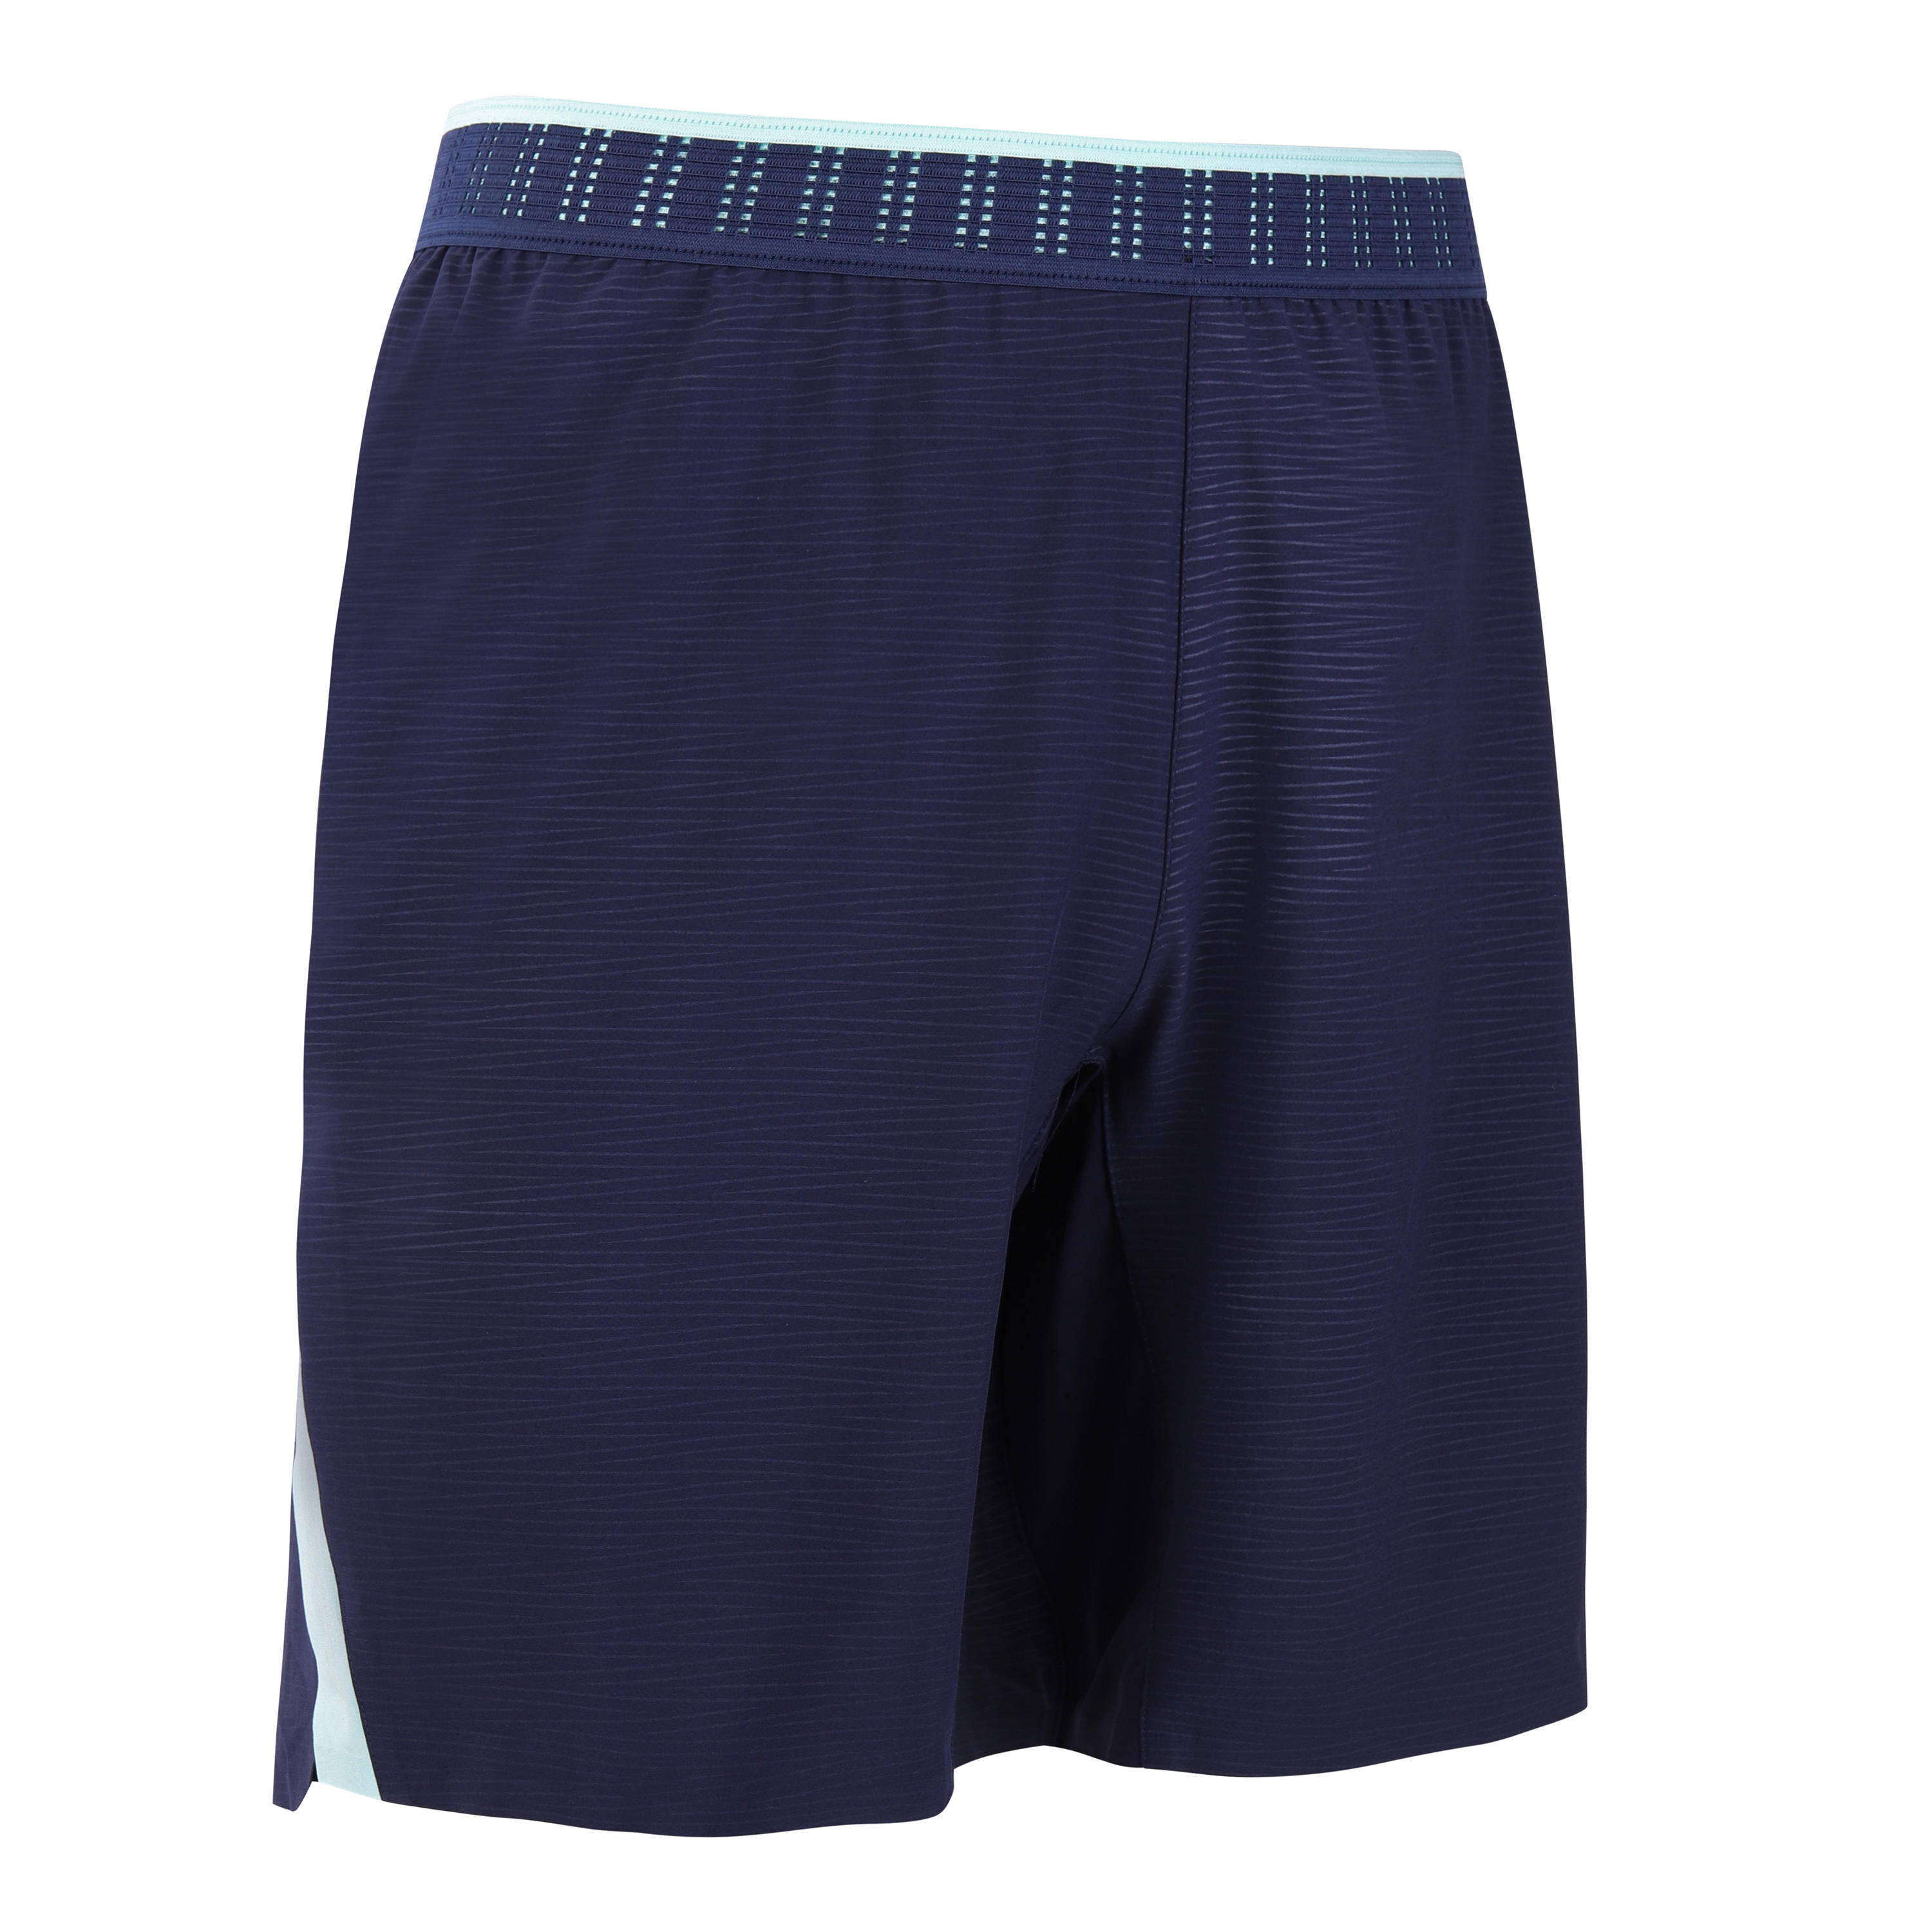 KIPSTA Adult Football Shorts CLR - Dark Blue